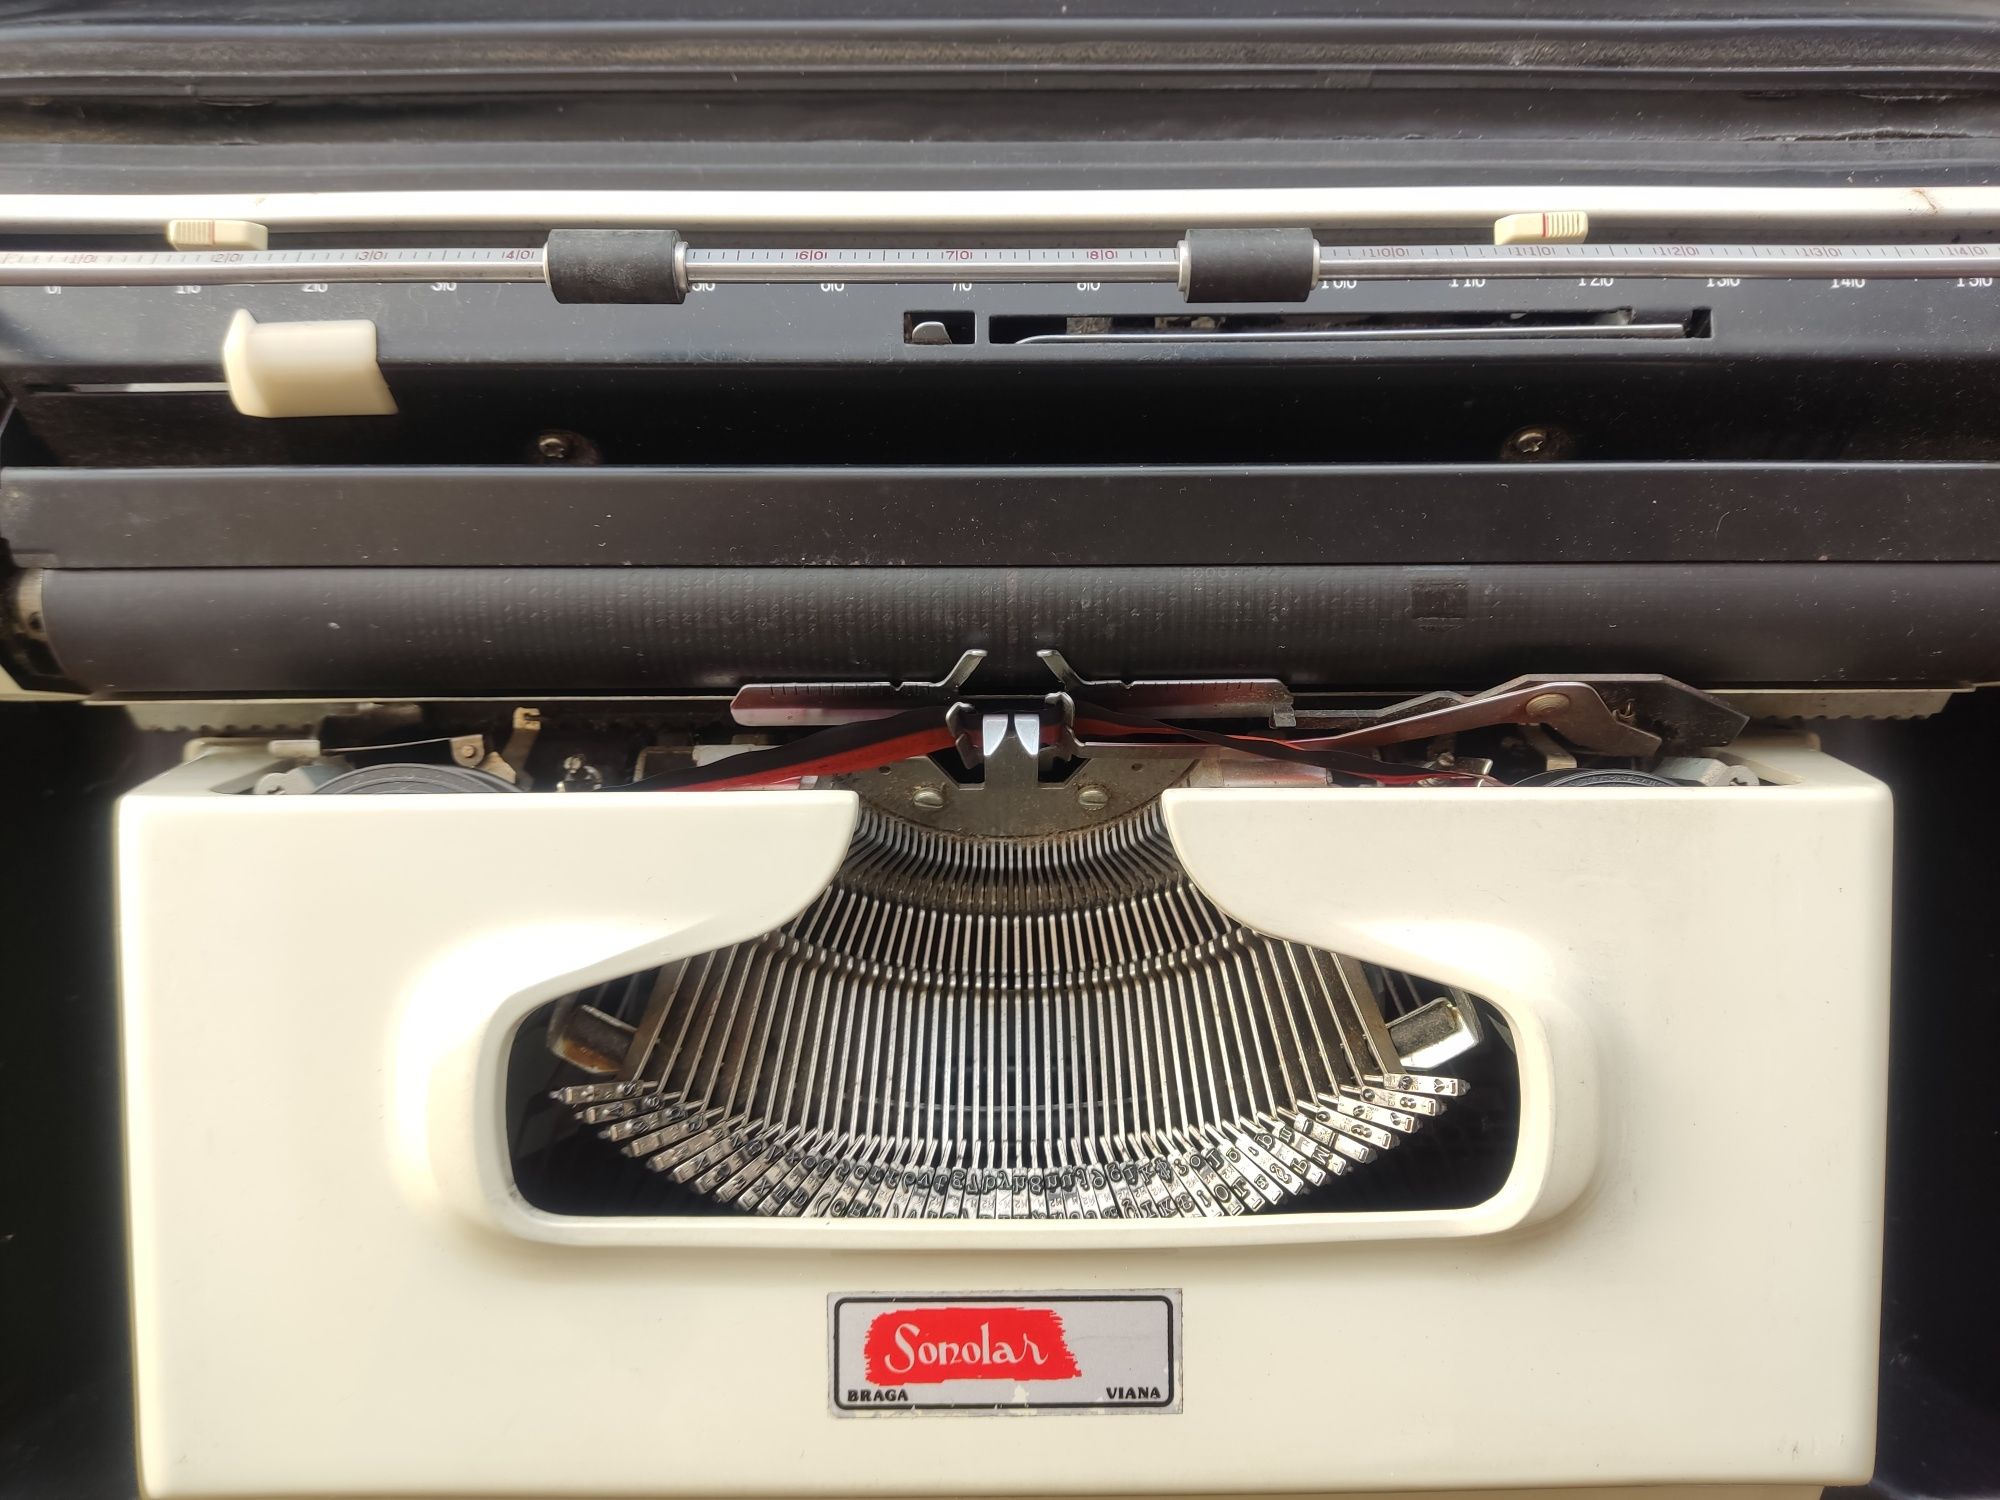 Máquina de escrever Brother Deluxe 1613 com mala transporte original